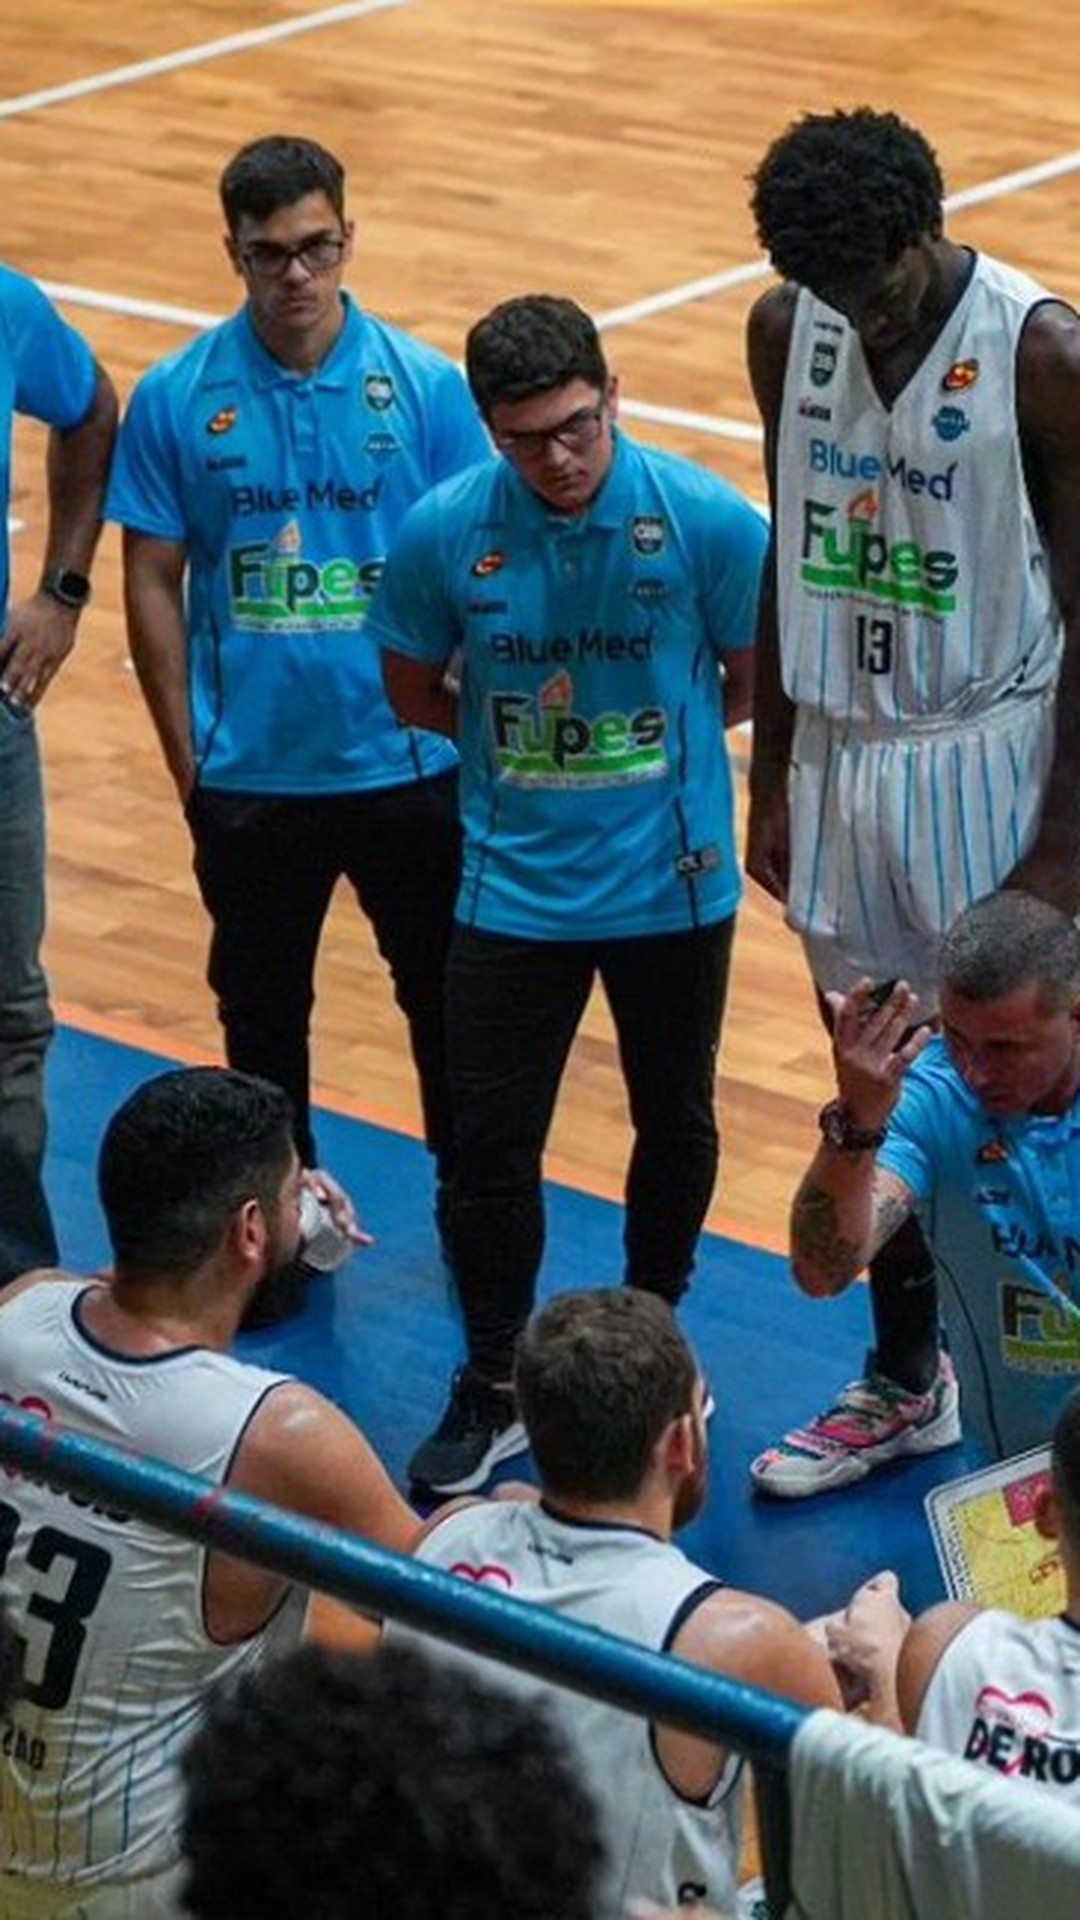 Torneio de basquete reúne mais de 500 atletas de vários países em Santos